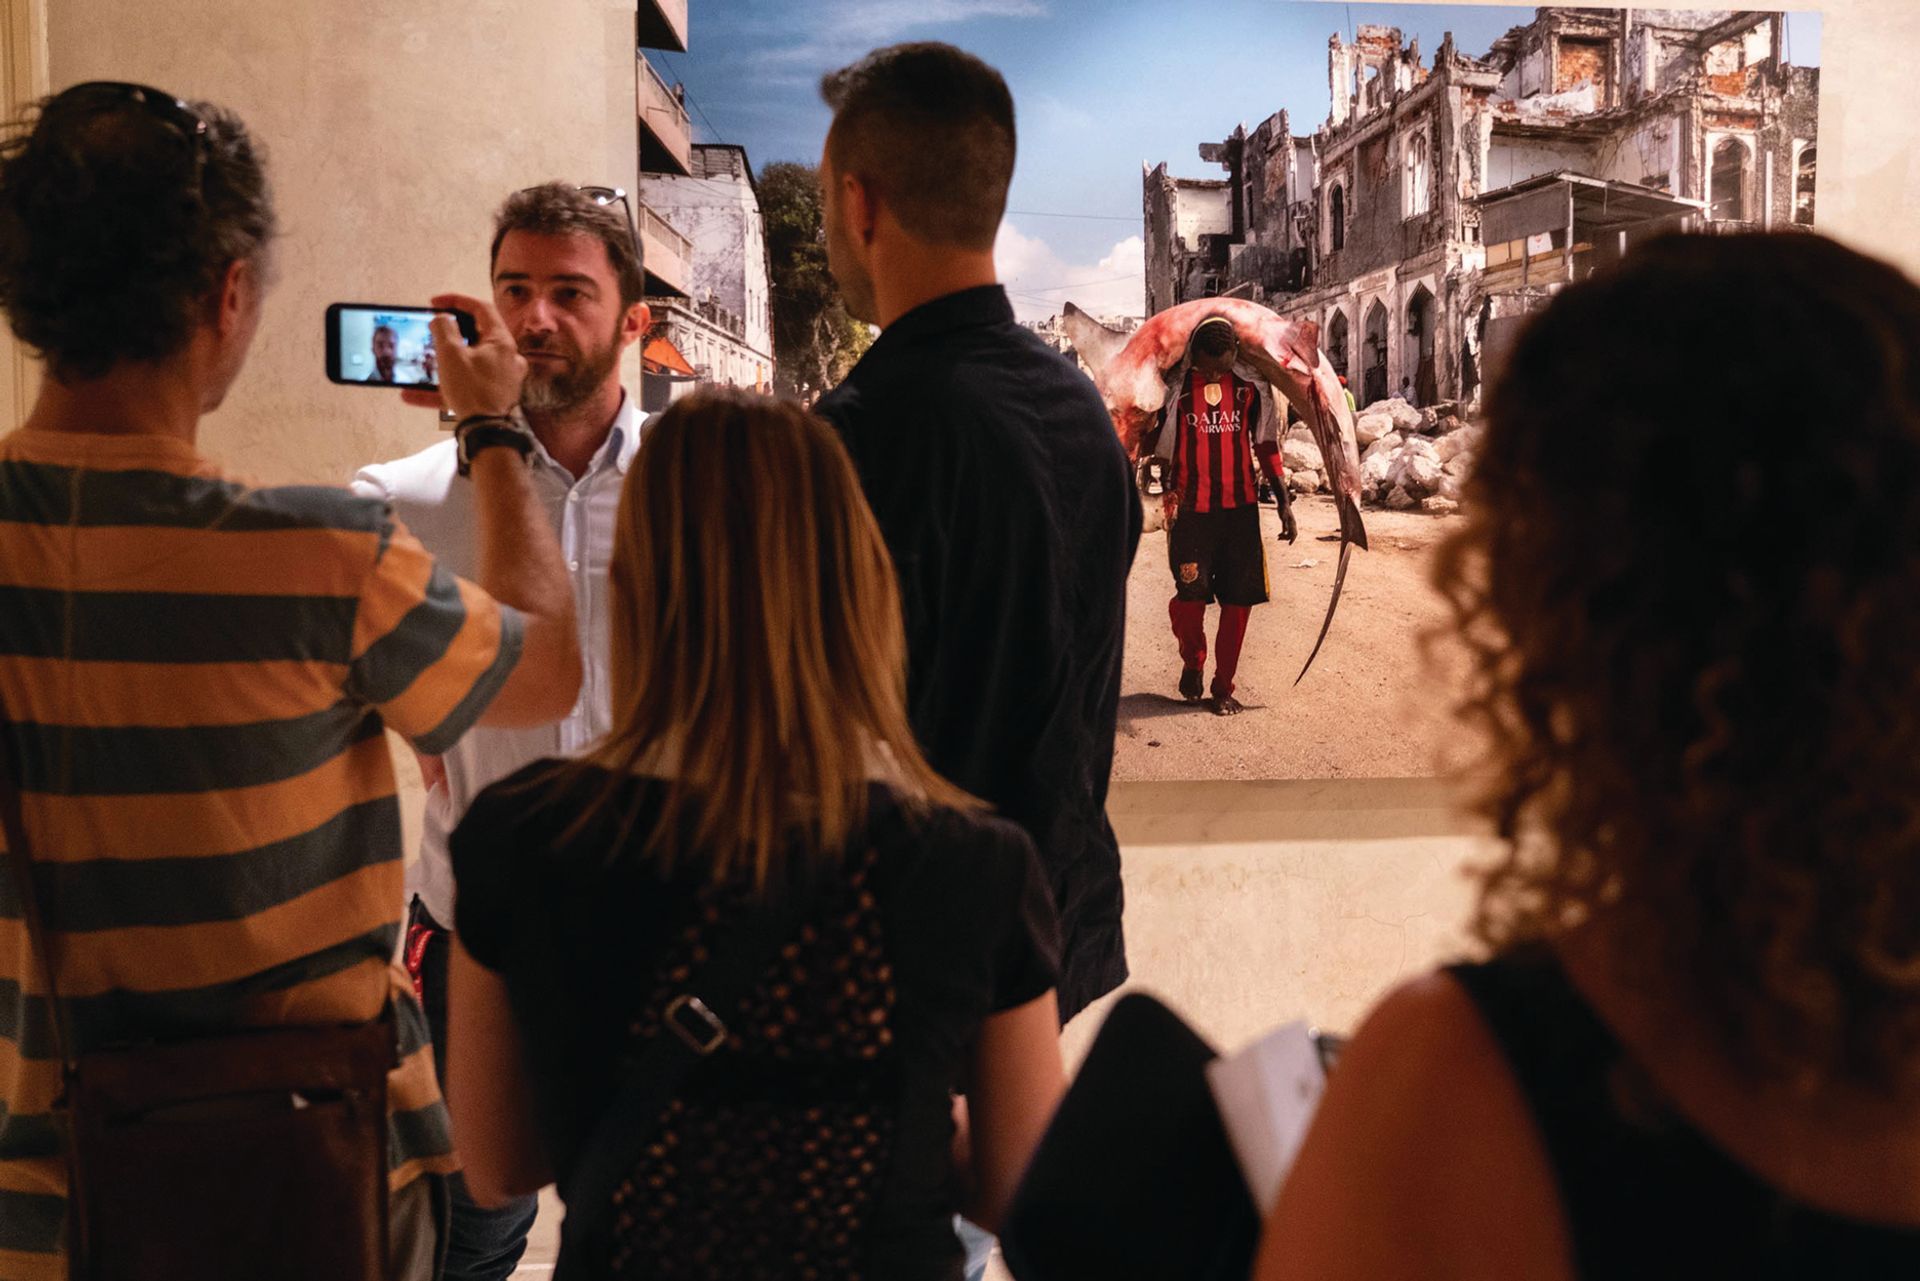 הצלם האיטלקי מרקו גוולאציני בתערוכתו Resilient ב- Palazzo Pigorini בפארמה בשנת 2019, מציג את דיווחו על משברים הומניטריים באפריקה בין 2009 ל -2018

© Città di Parma